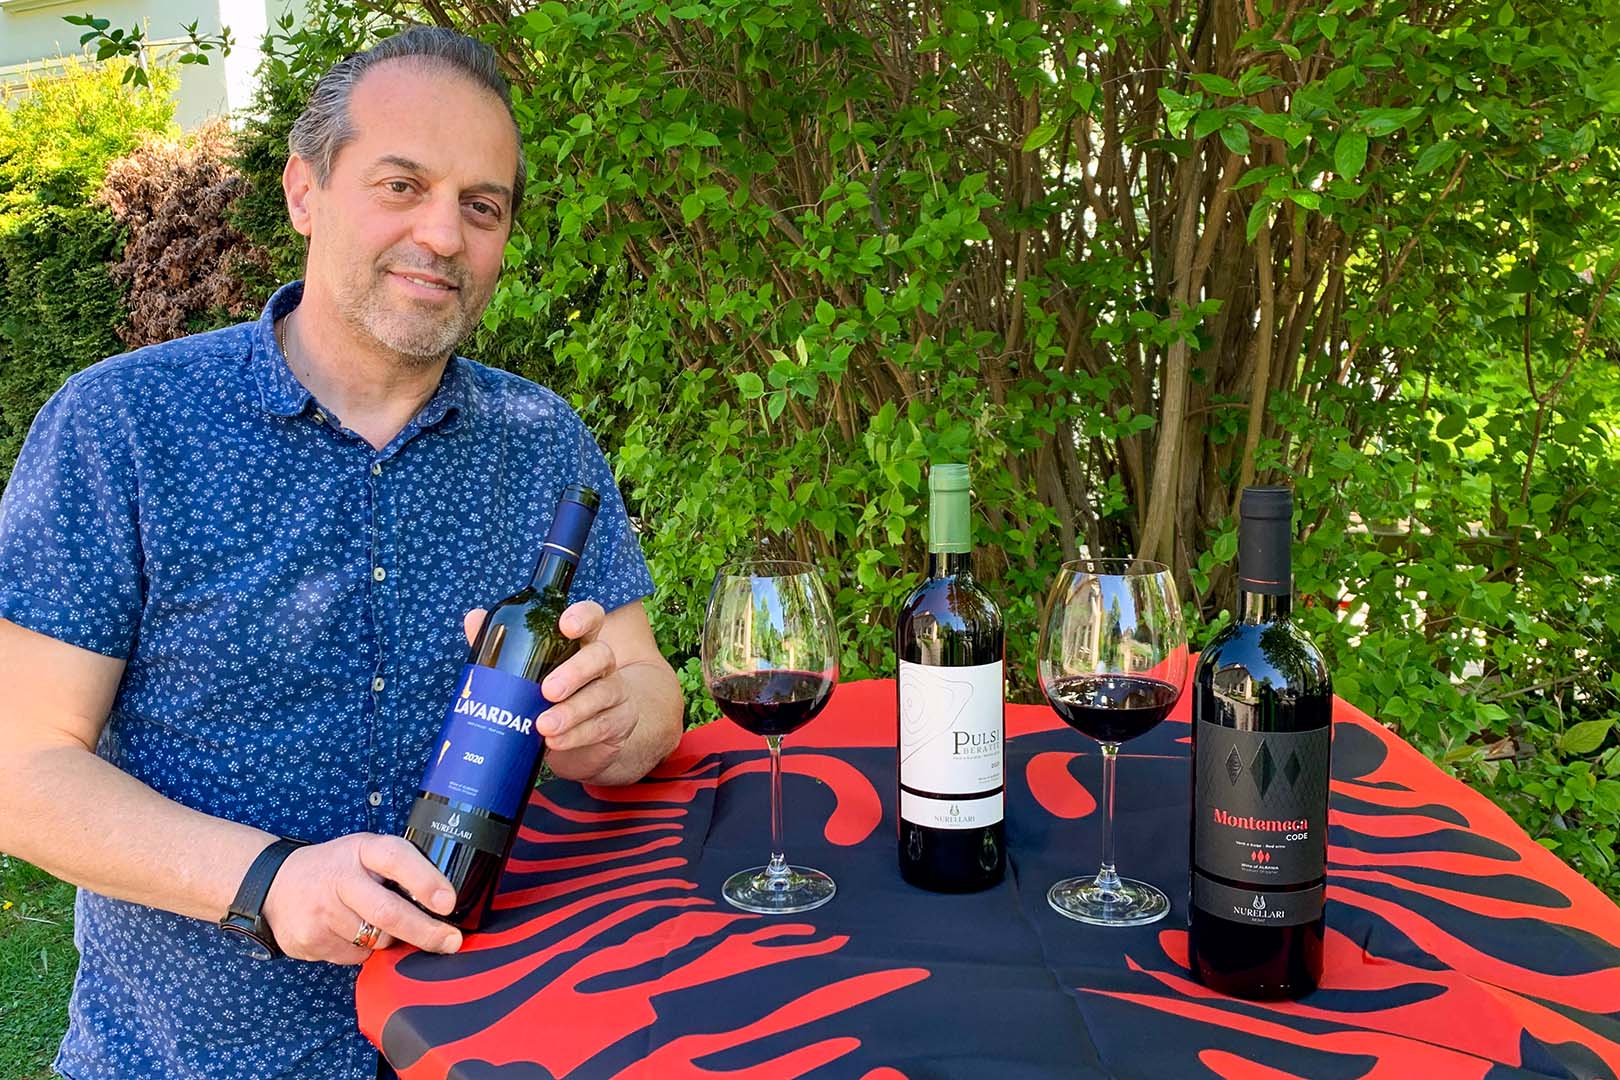 Gëzuar: Valter Kryemadhi präsentiert hochwertige Weine aus Albanien